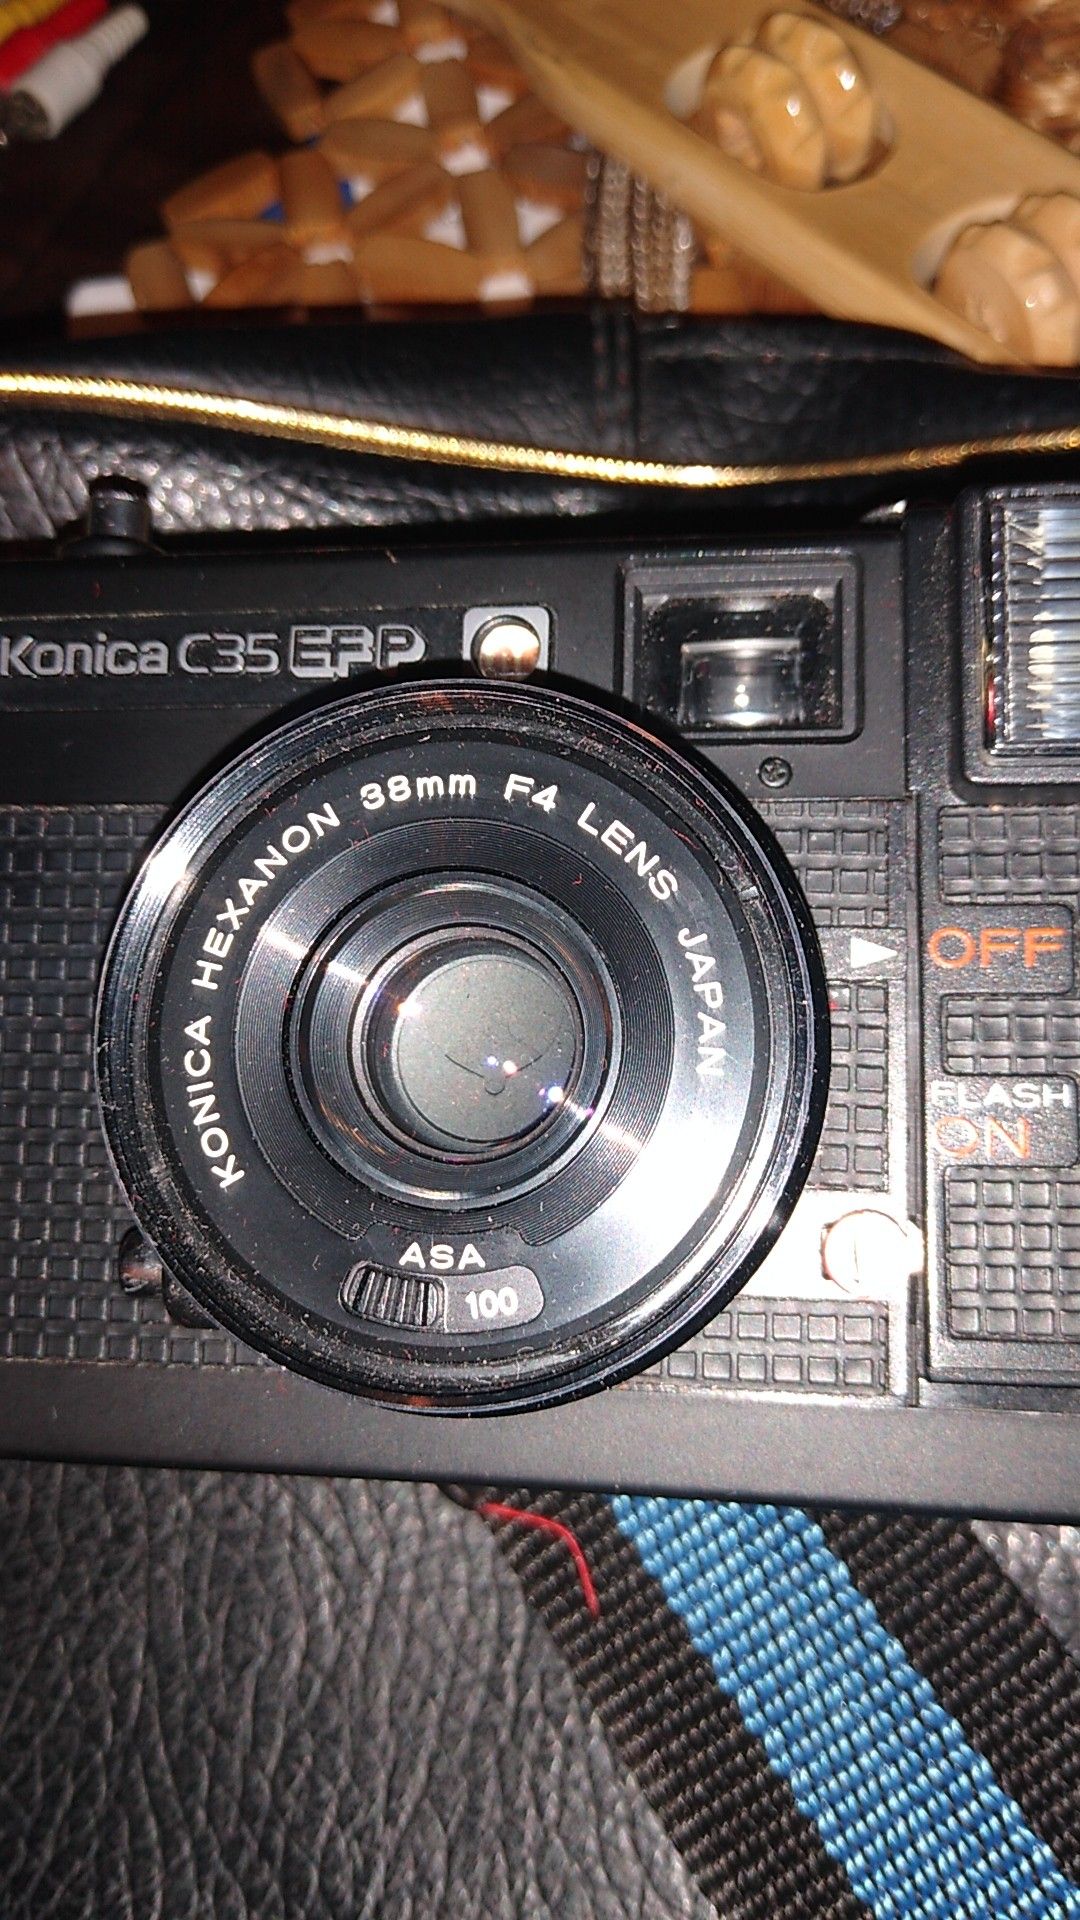 Konica c35 Efp camera and bag